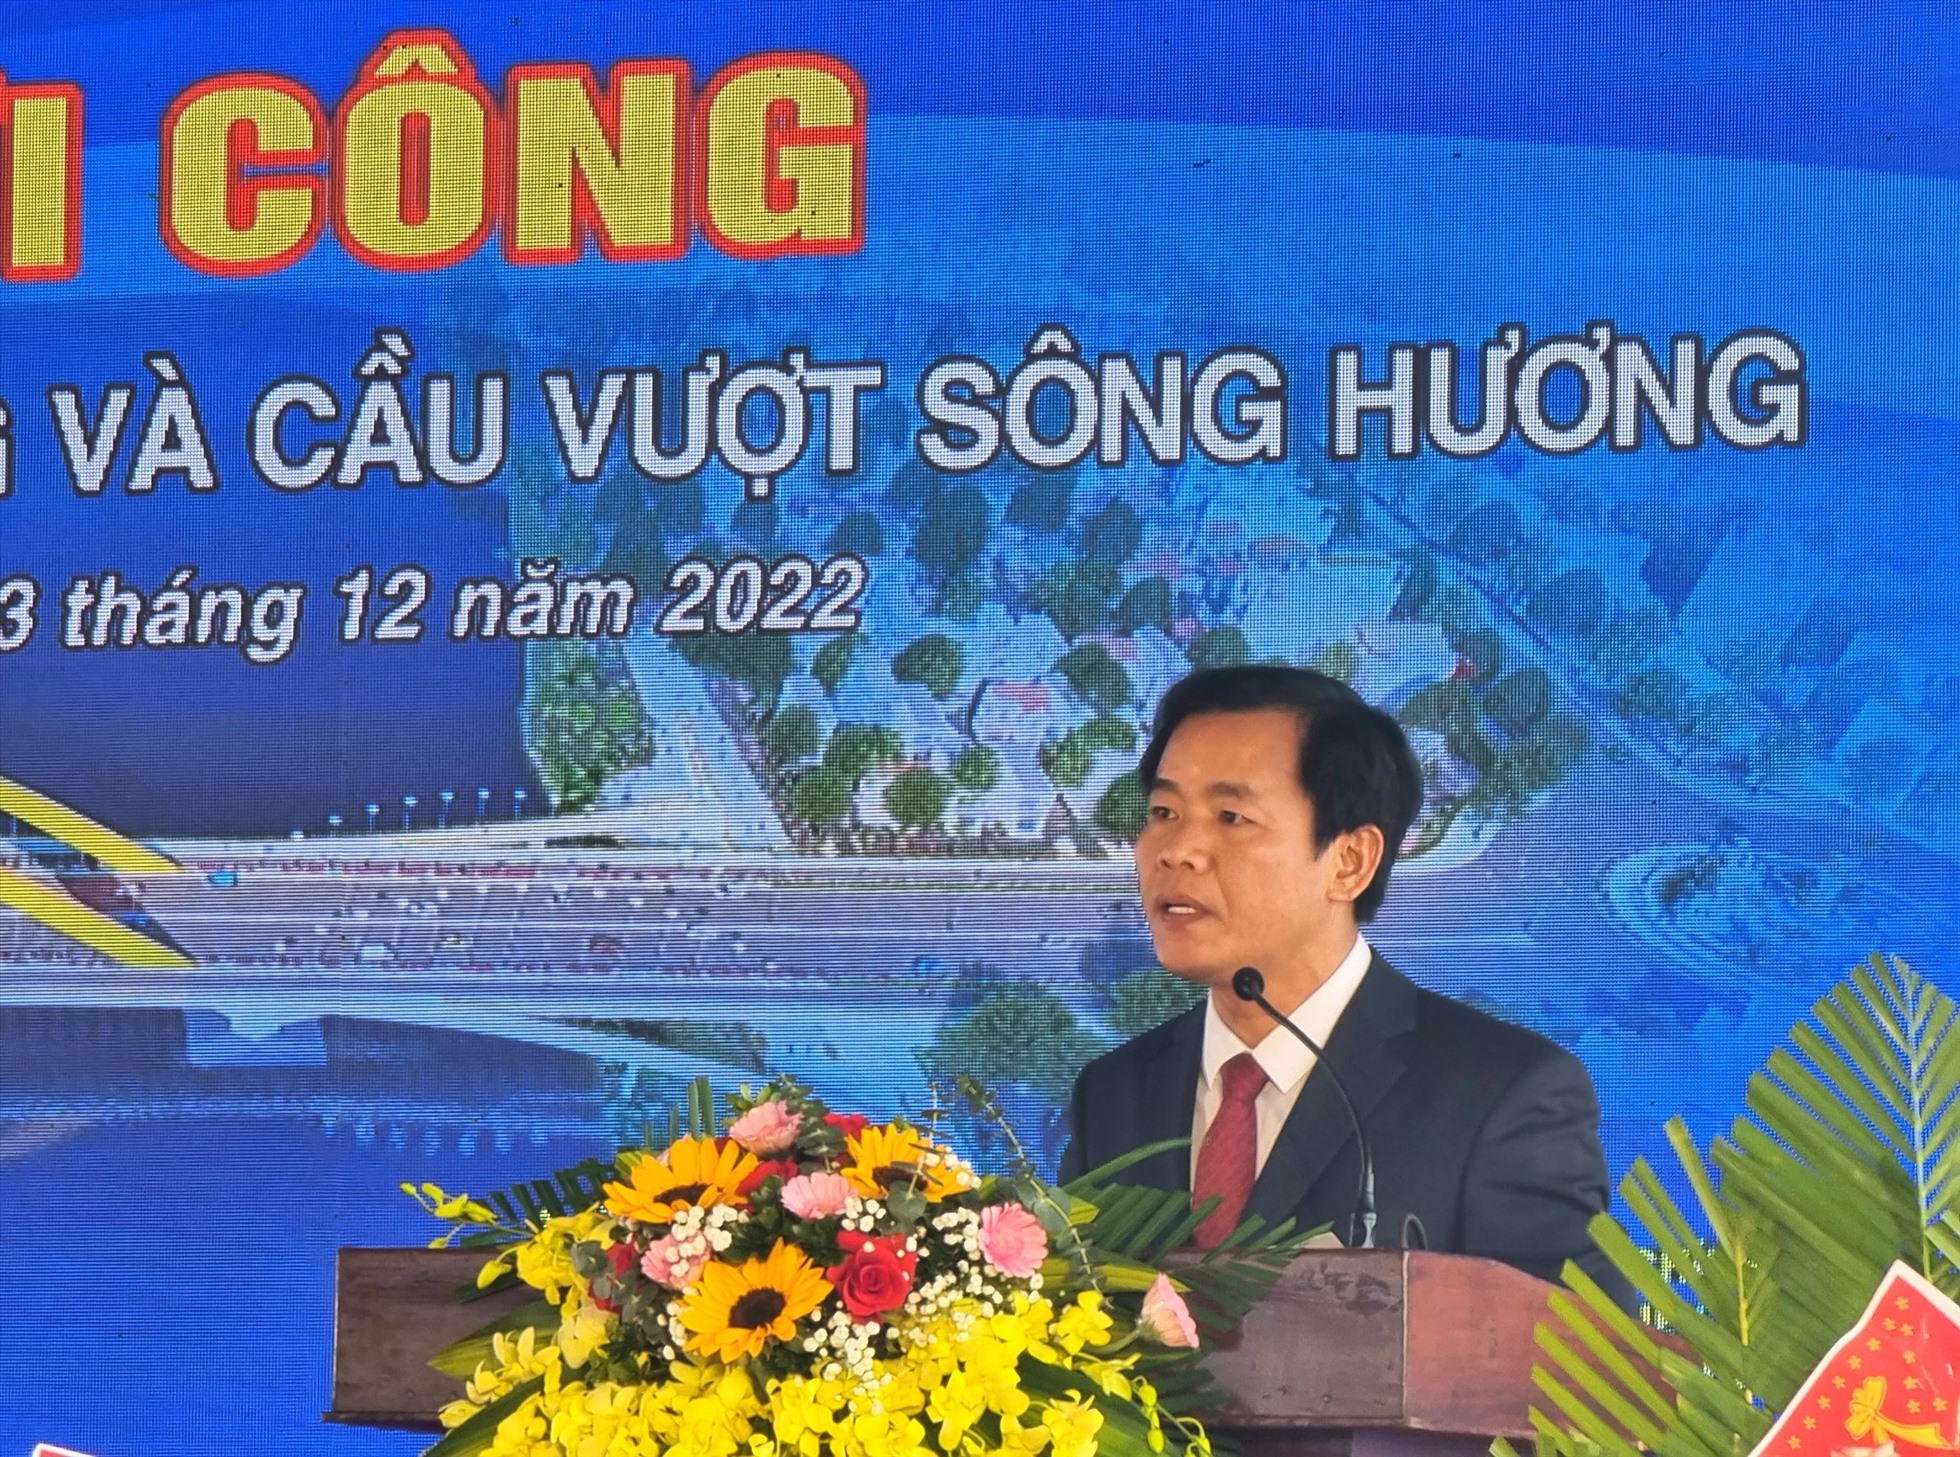 Chủ tịch UBND tỉnh Thừa Thiên Huế Nguyễn Văn phương phát biểu tại buổi lễ. Ảnh: Quảng An.